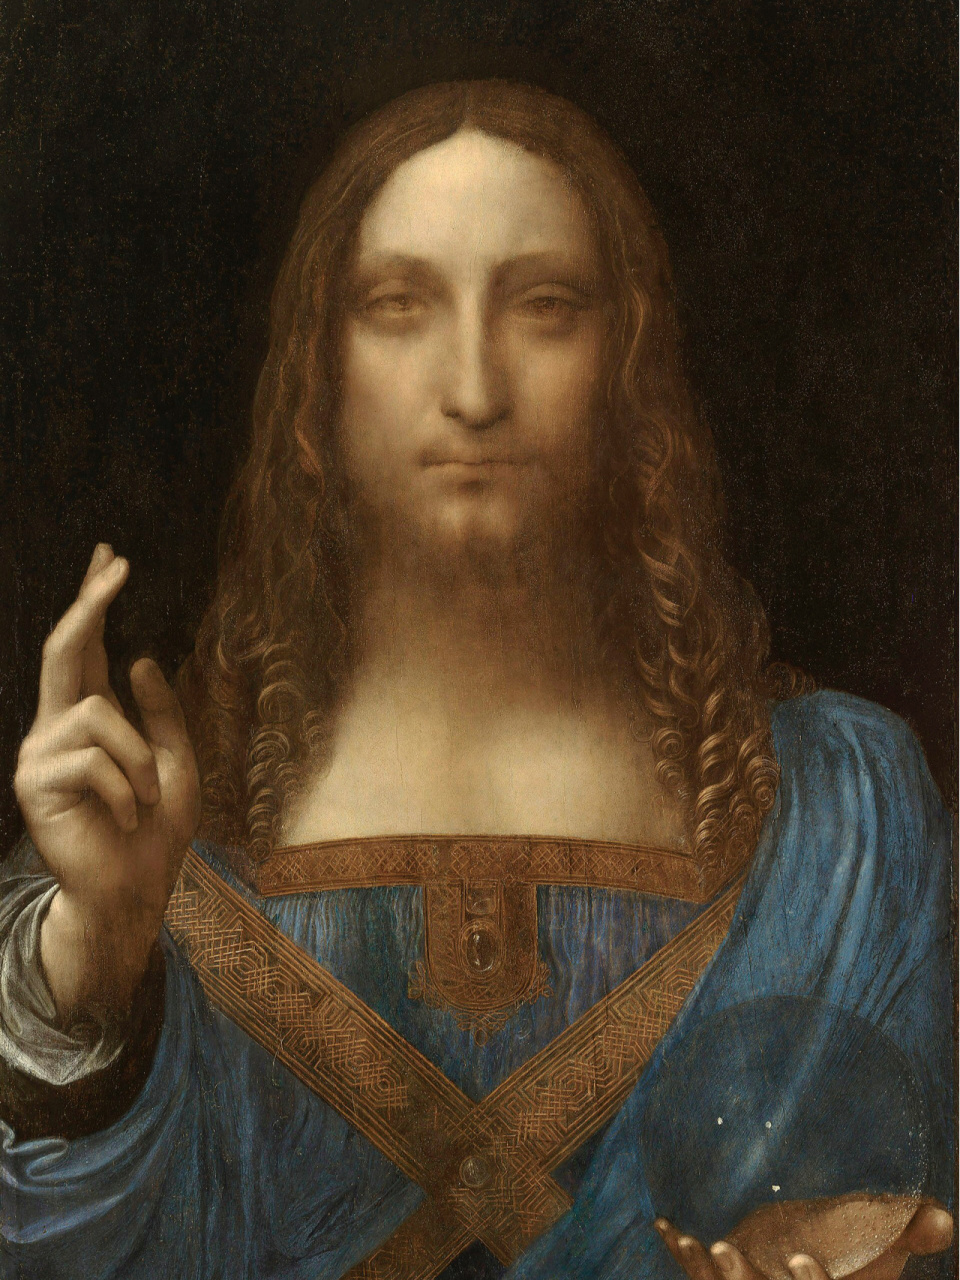 达芬奇画里那些奇奇怪怪的手势 第一幅,施洗者圣约翰圣约翰的手势指向